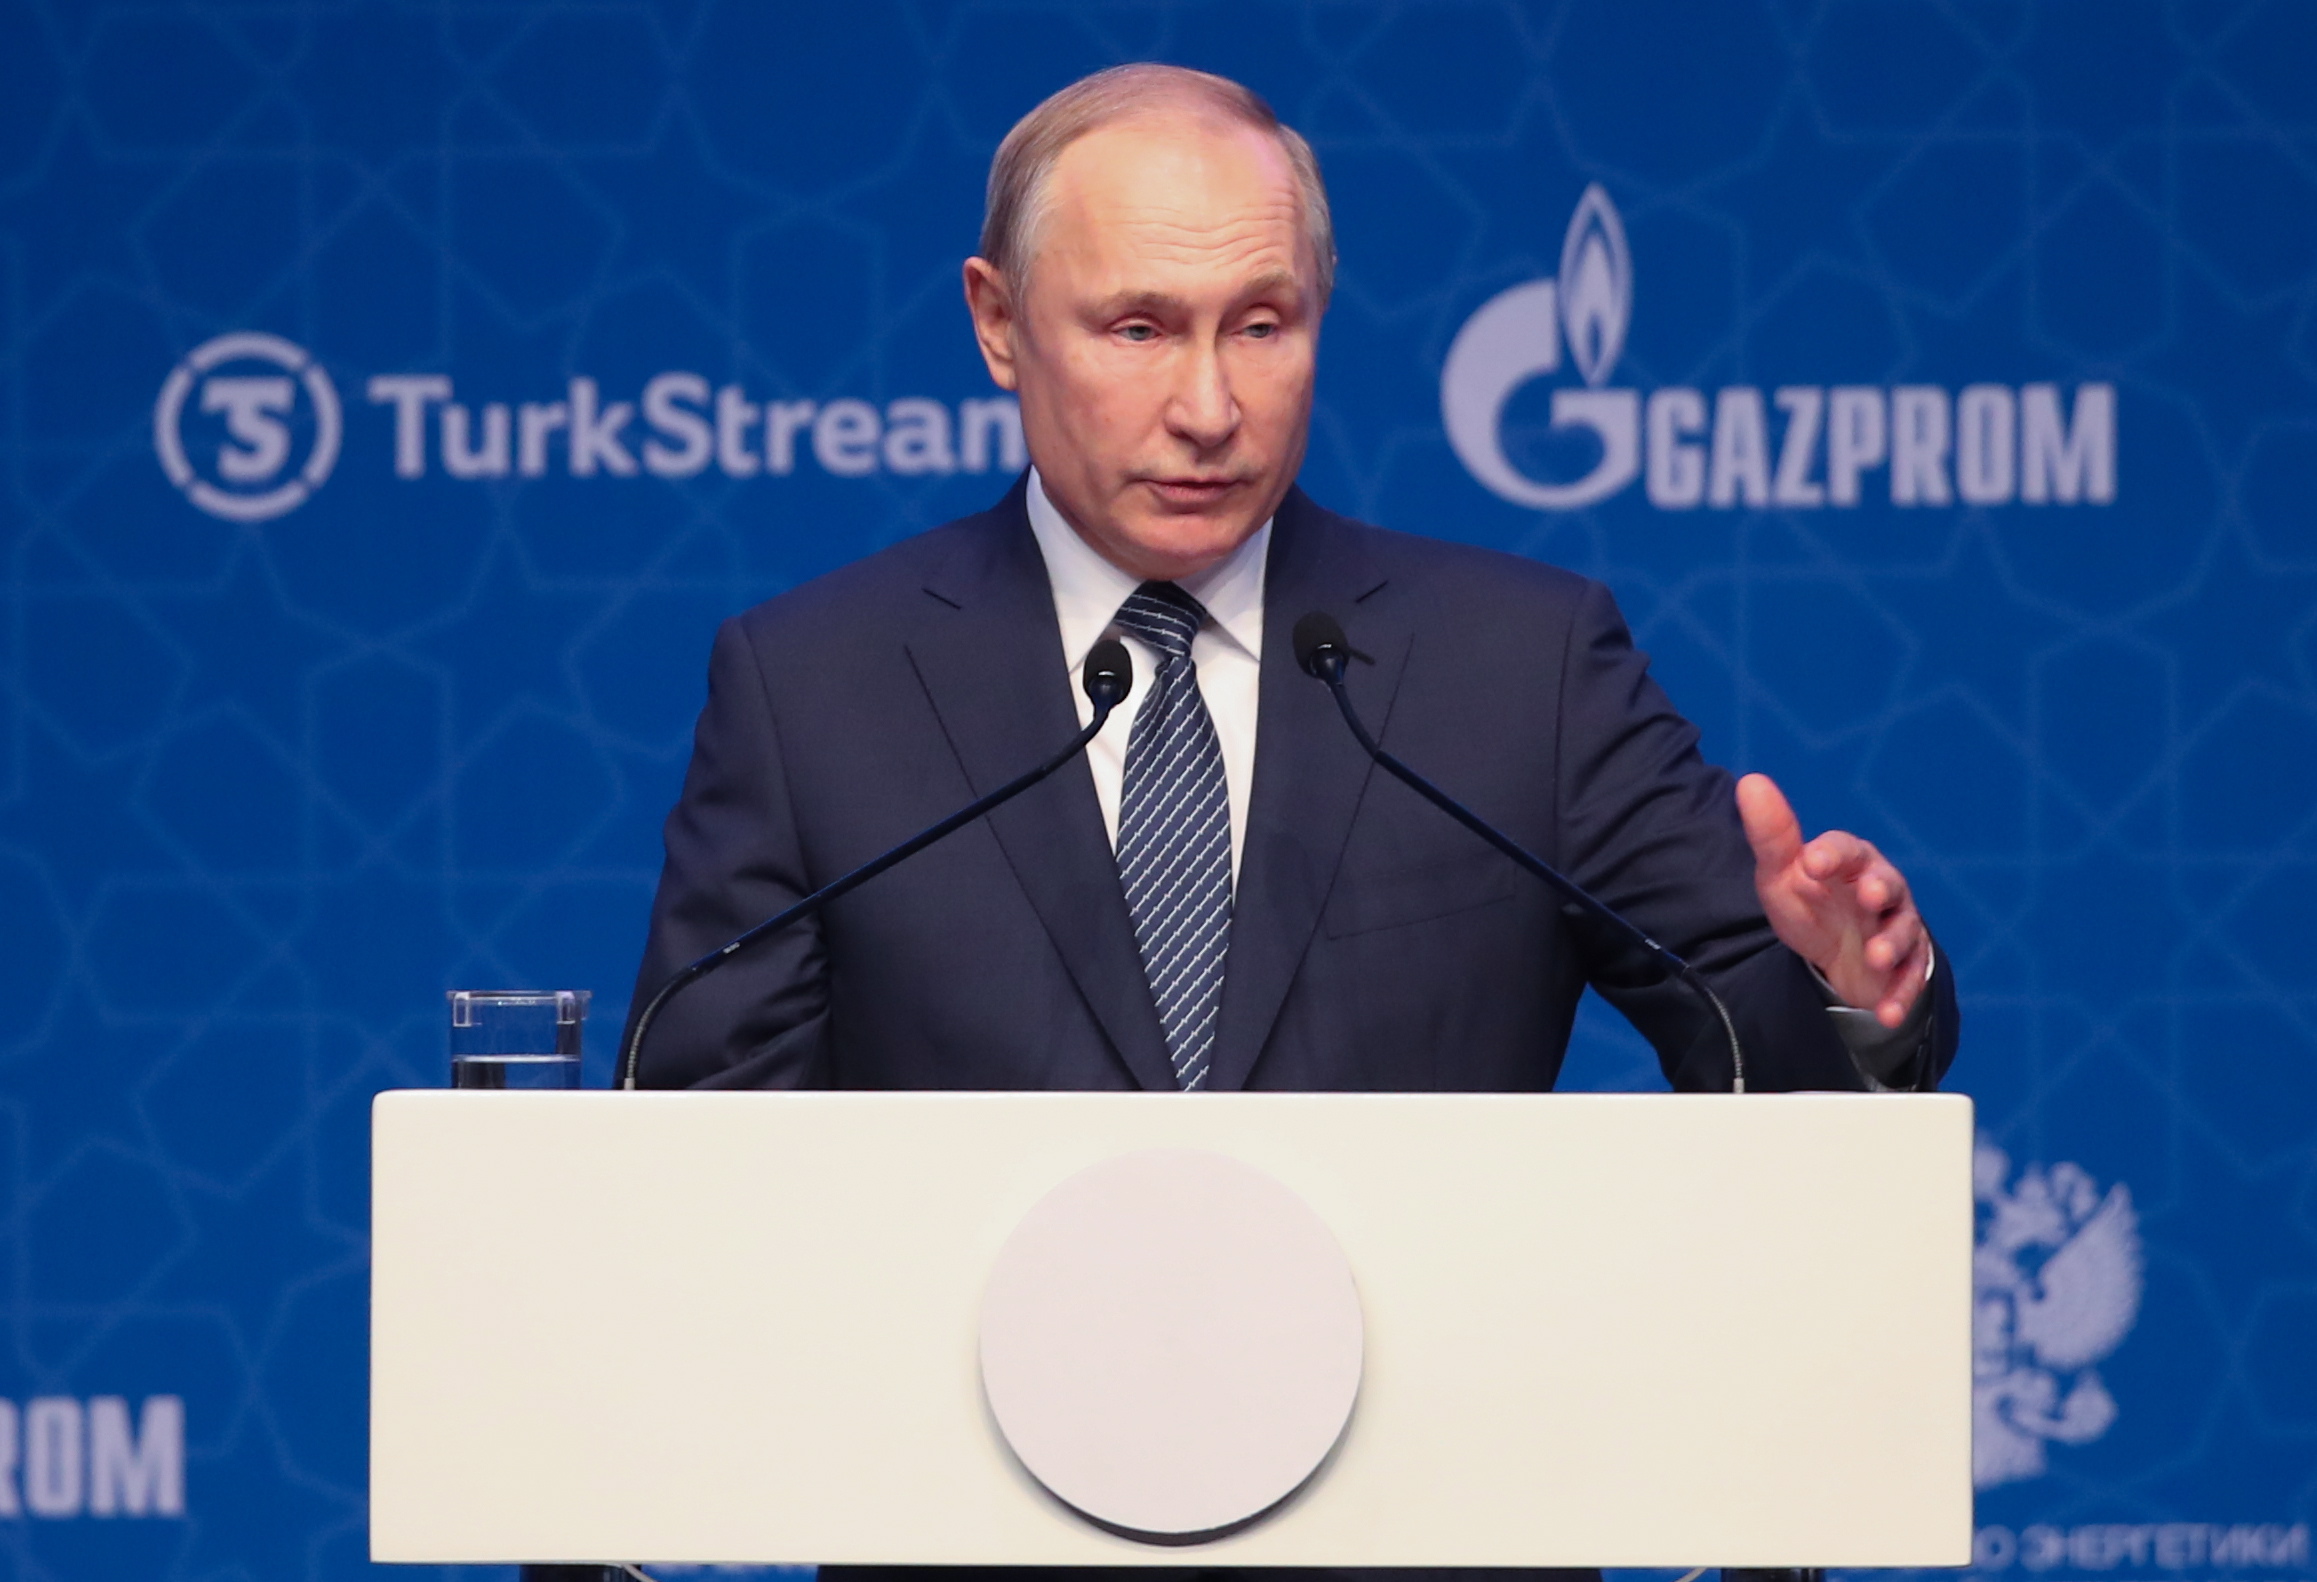 На церемонията присъстваха министър-председателят Бойко Борисов и президентите на Русия и Турция Владимир Путин и Реджеп Тайип Ердоган